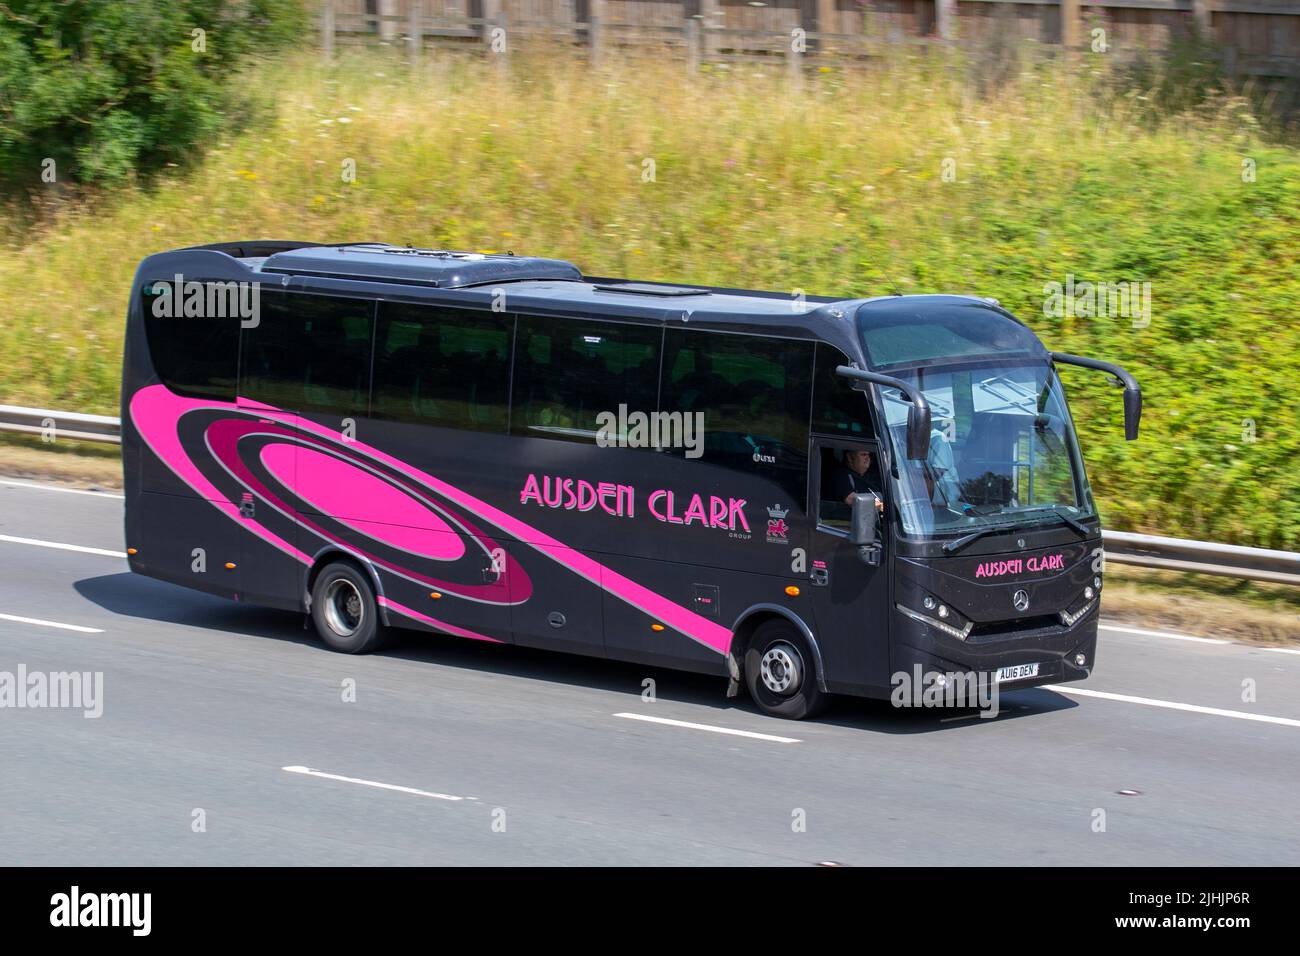 AUSDEN CLARK Group. 2018 Mercedes Benz7700cc Diesel bus avec plaque d'immatriculation privée, enregistrement personnalisé, enregistrements sans données chers, marques d'immatriculation sur l'autoroute M6 UK Banque D'Images